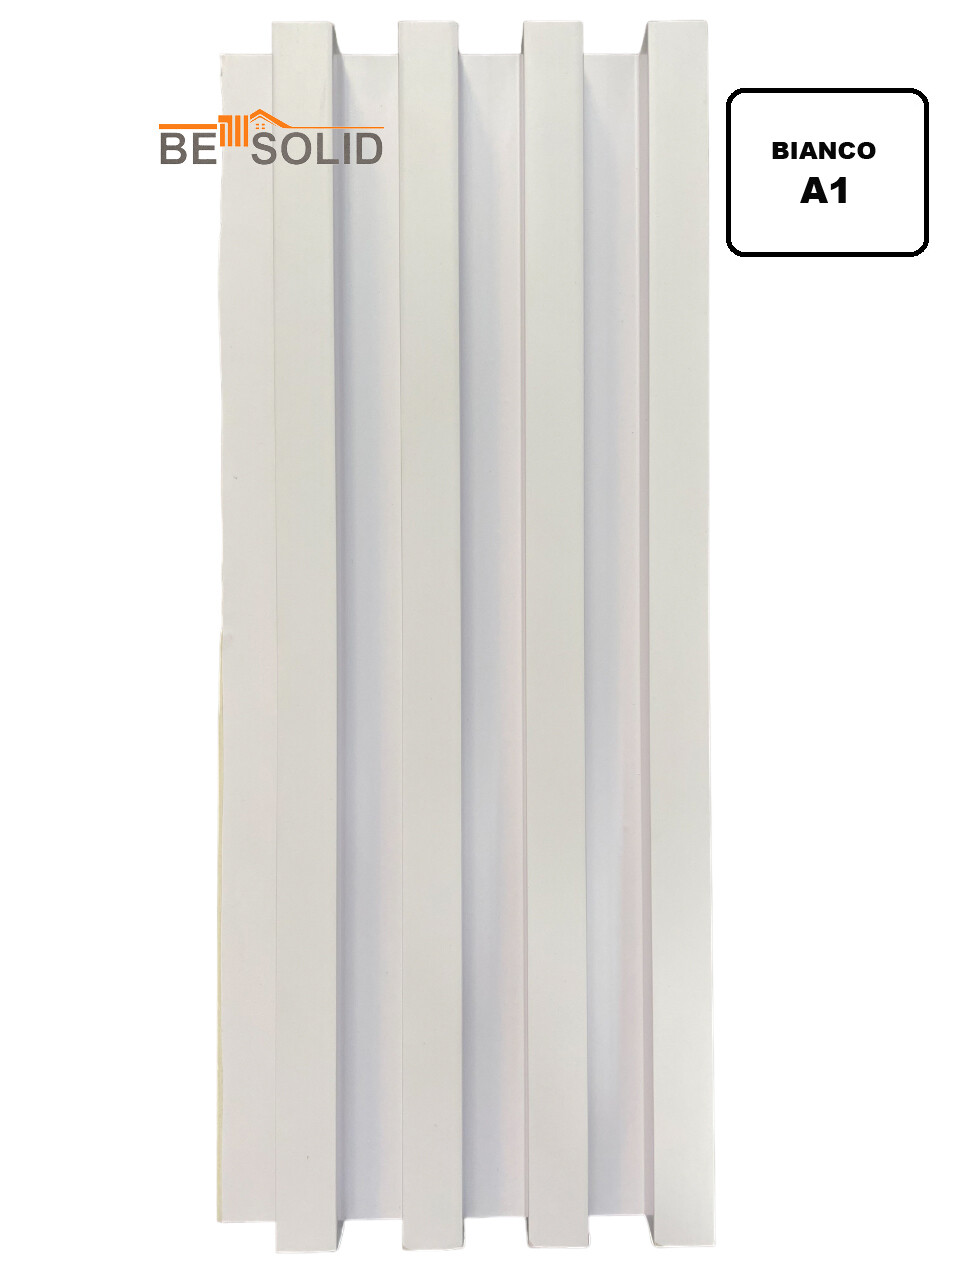 COMBI PANEL 16cm X 2.90m (ALTEZZA) WHITE (A1)